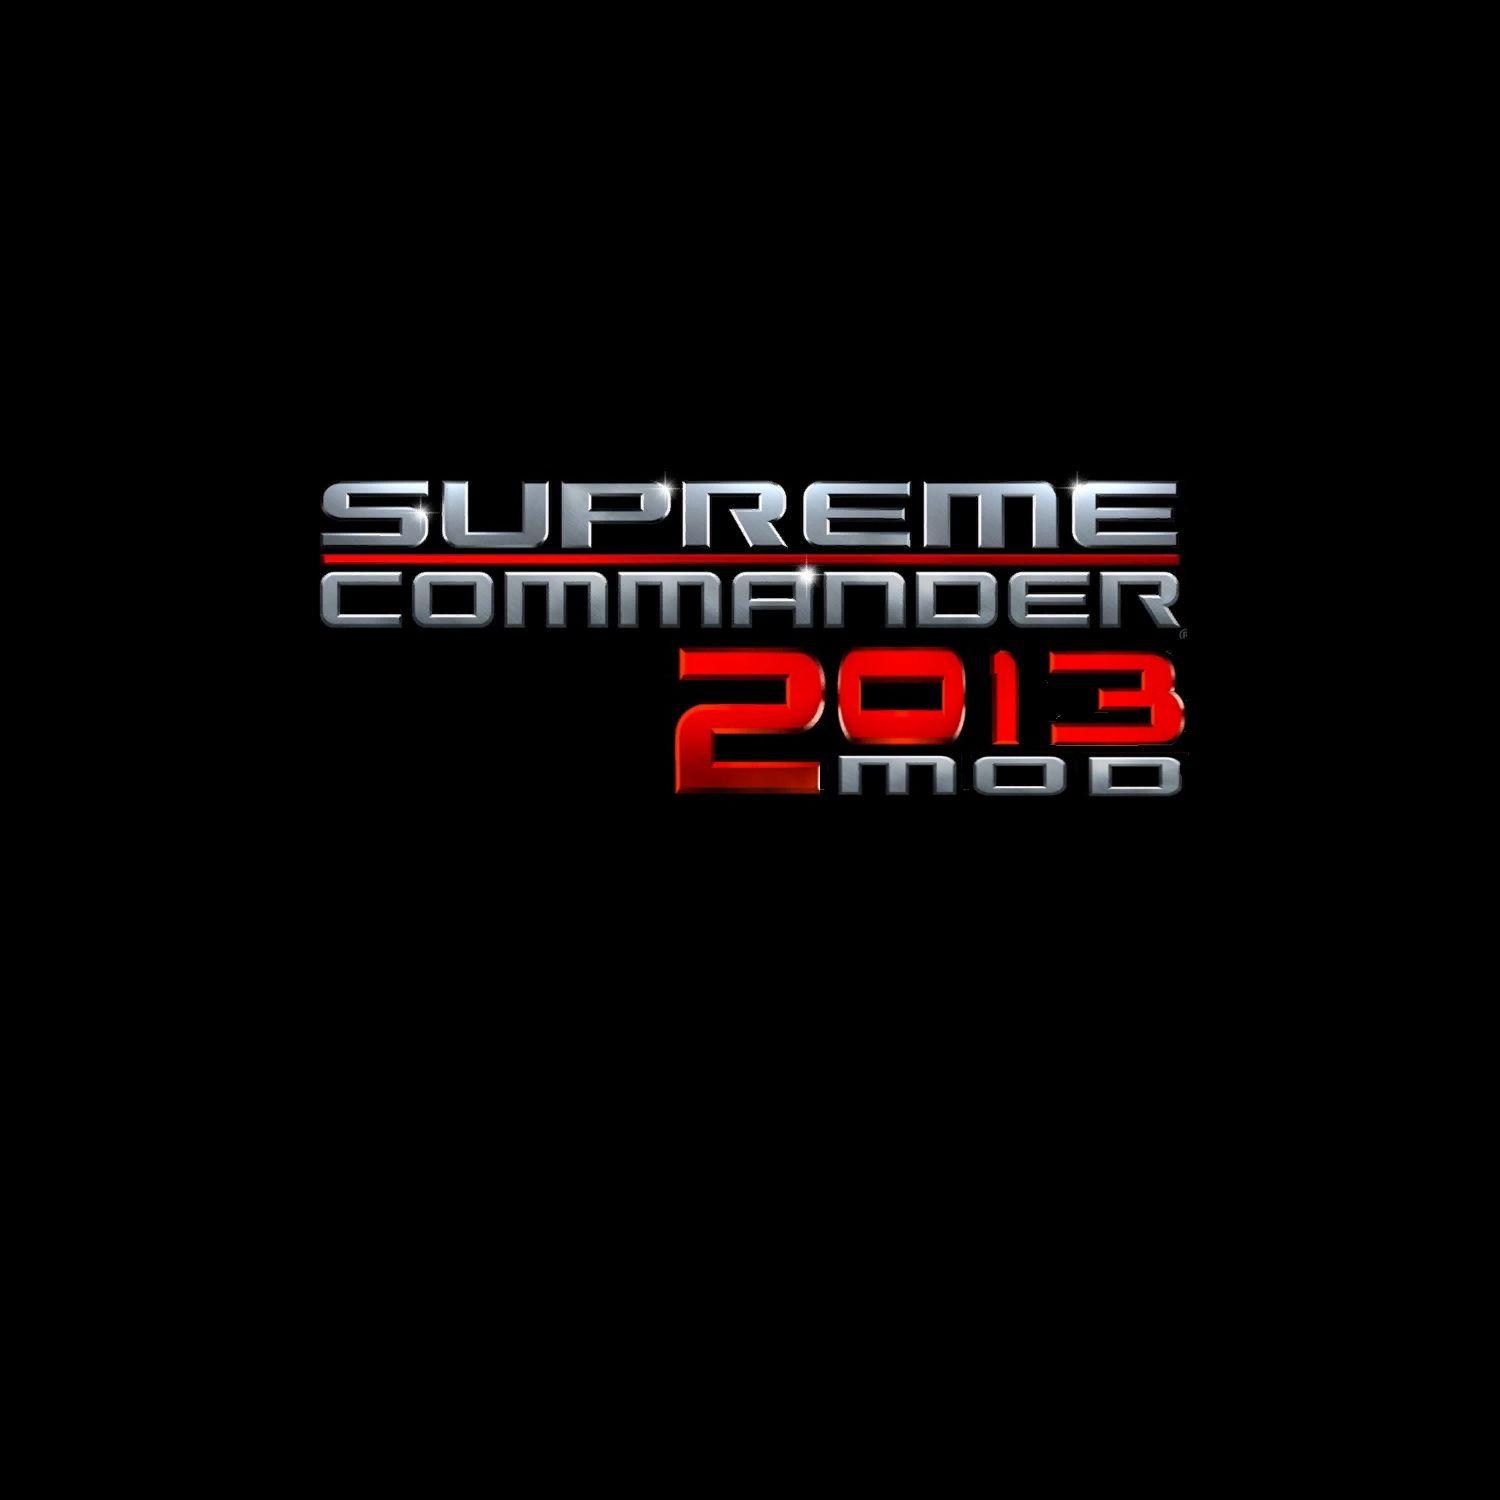 Supreme Commander Logo - Supreme Commander 2 0 1 3 Mod Logos image - Mod DB